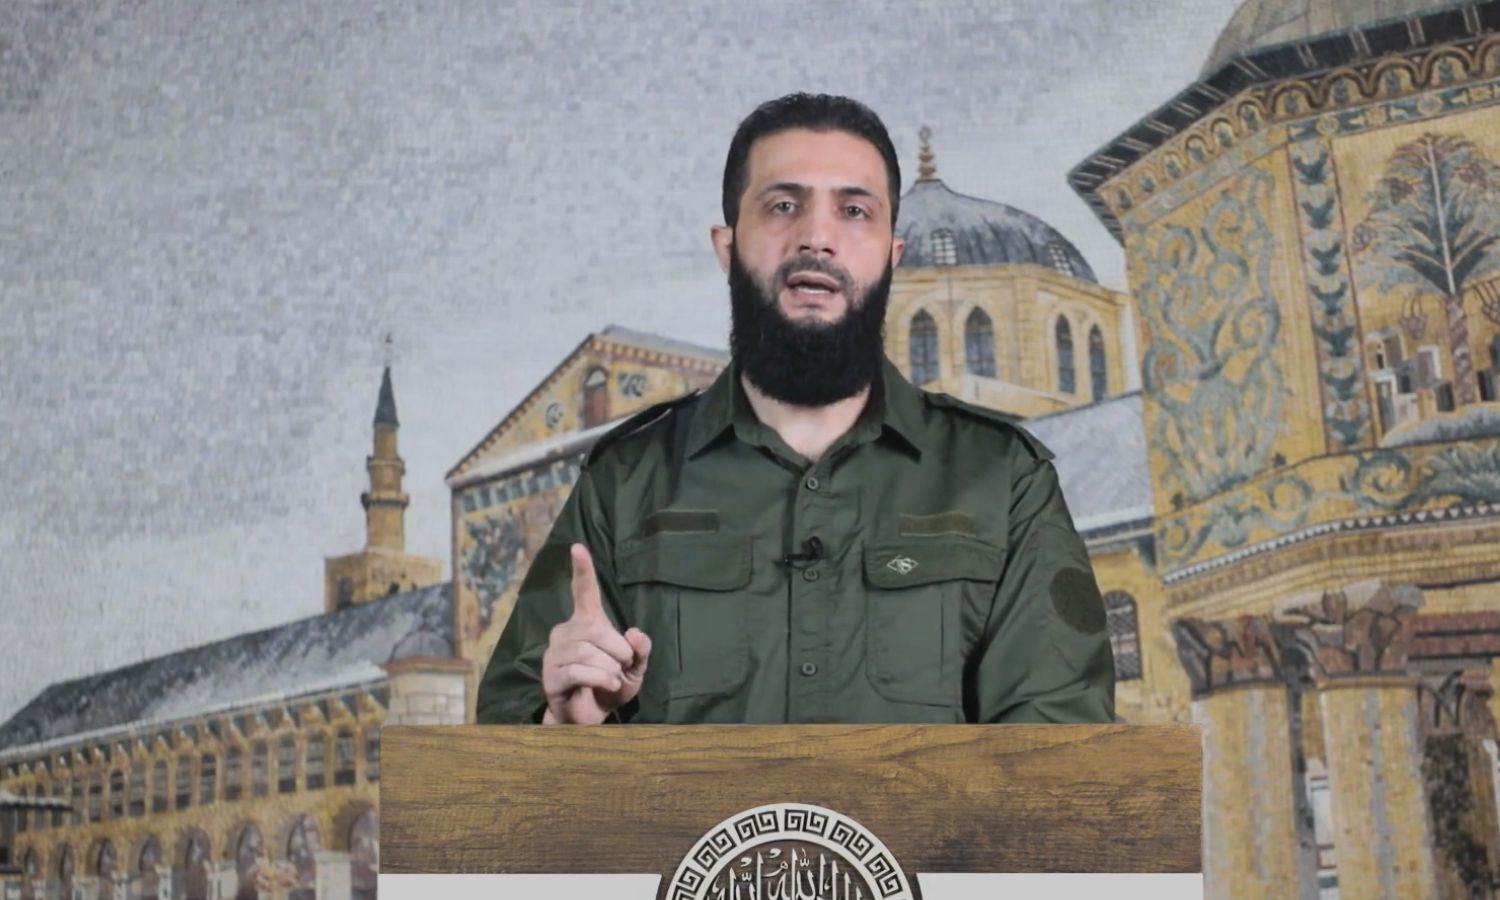 القائد العام لـ"هيئة تحرير الشام" صاحبة النفوذ العسكري في إدلب، "أبو محمد الجولاني" مُدرج ضمن المطلوبين لأمريكا- 2 من كانون الثاني 2023 (أمجاد)